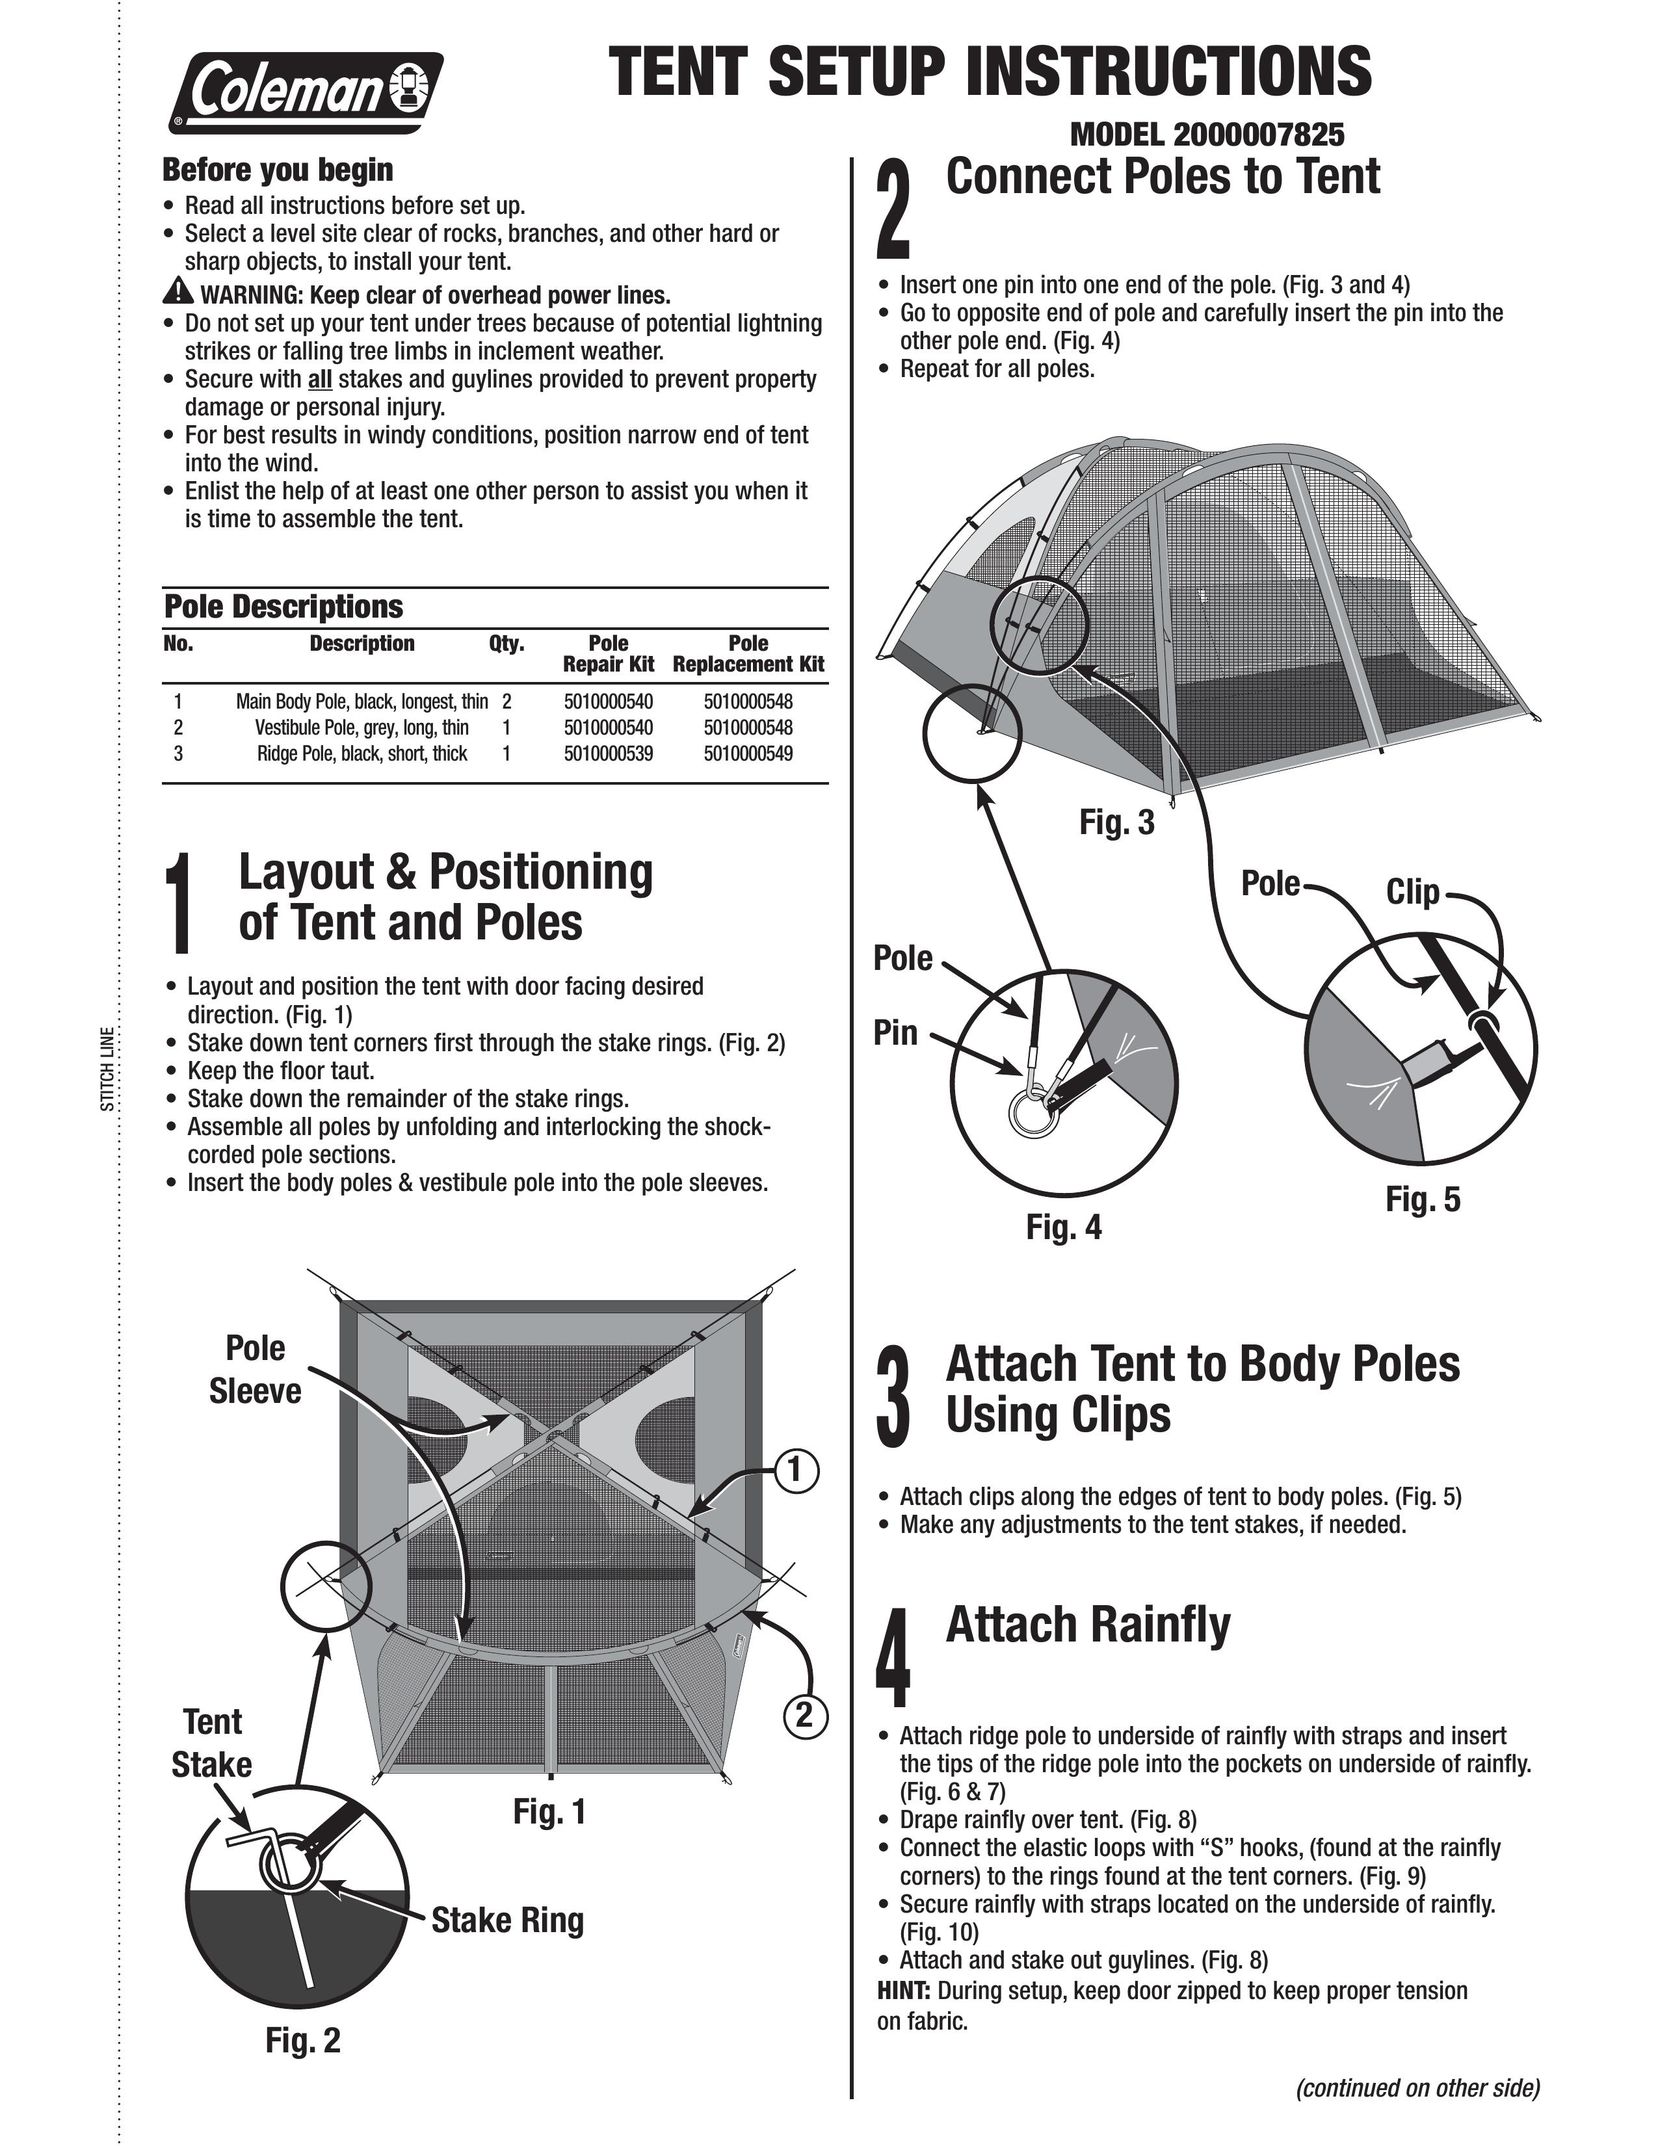 Coleman 2000007825 Tent User Manual